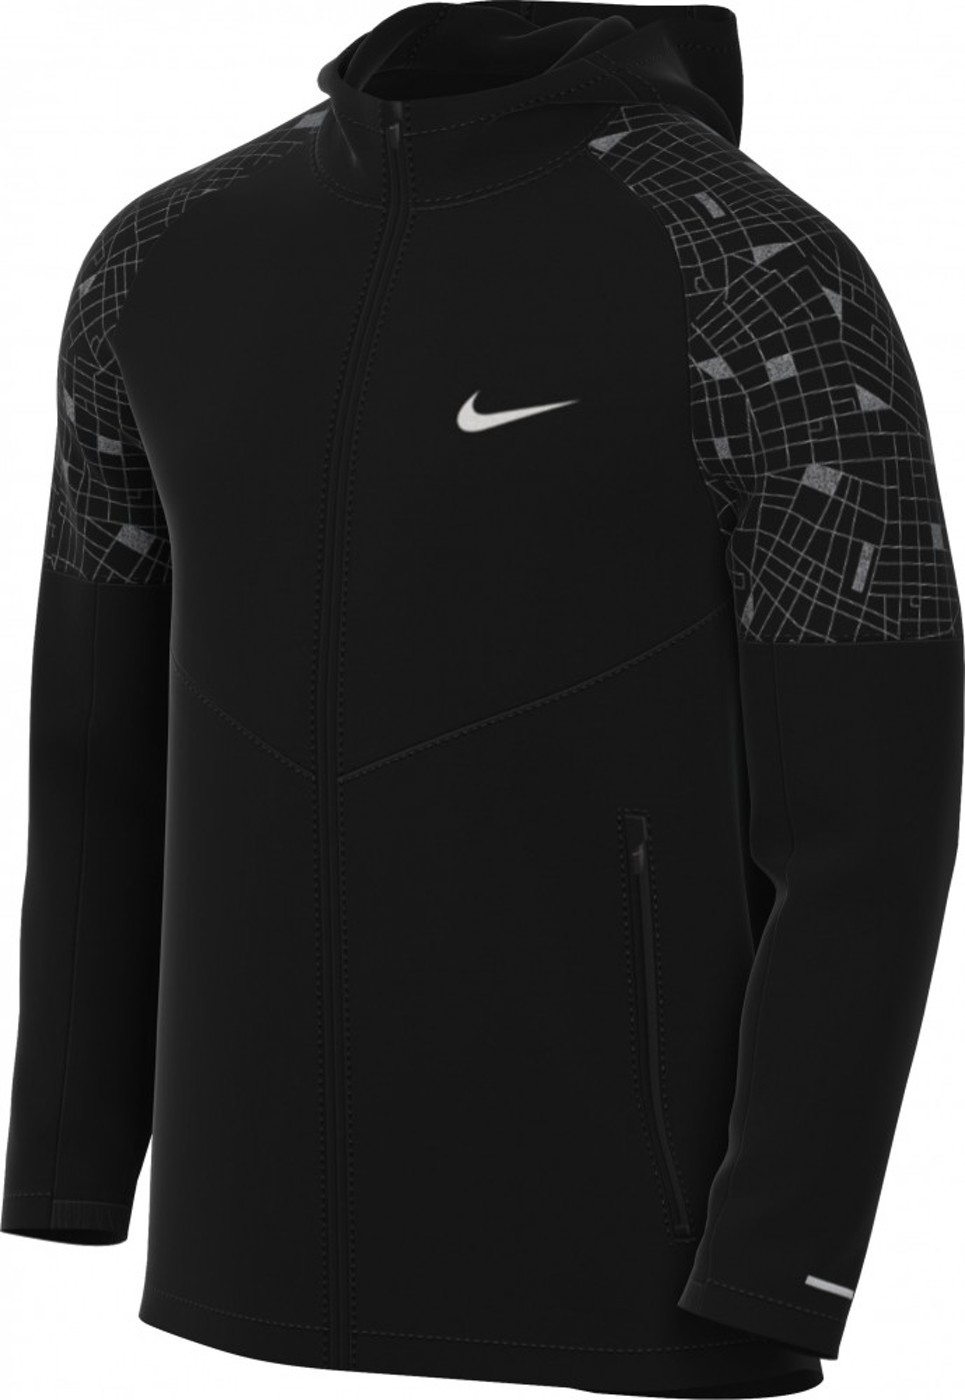 Nike Repel Miler Run Division - Herren